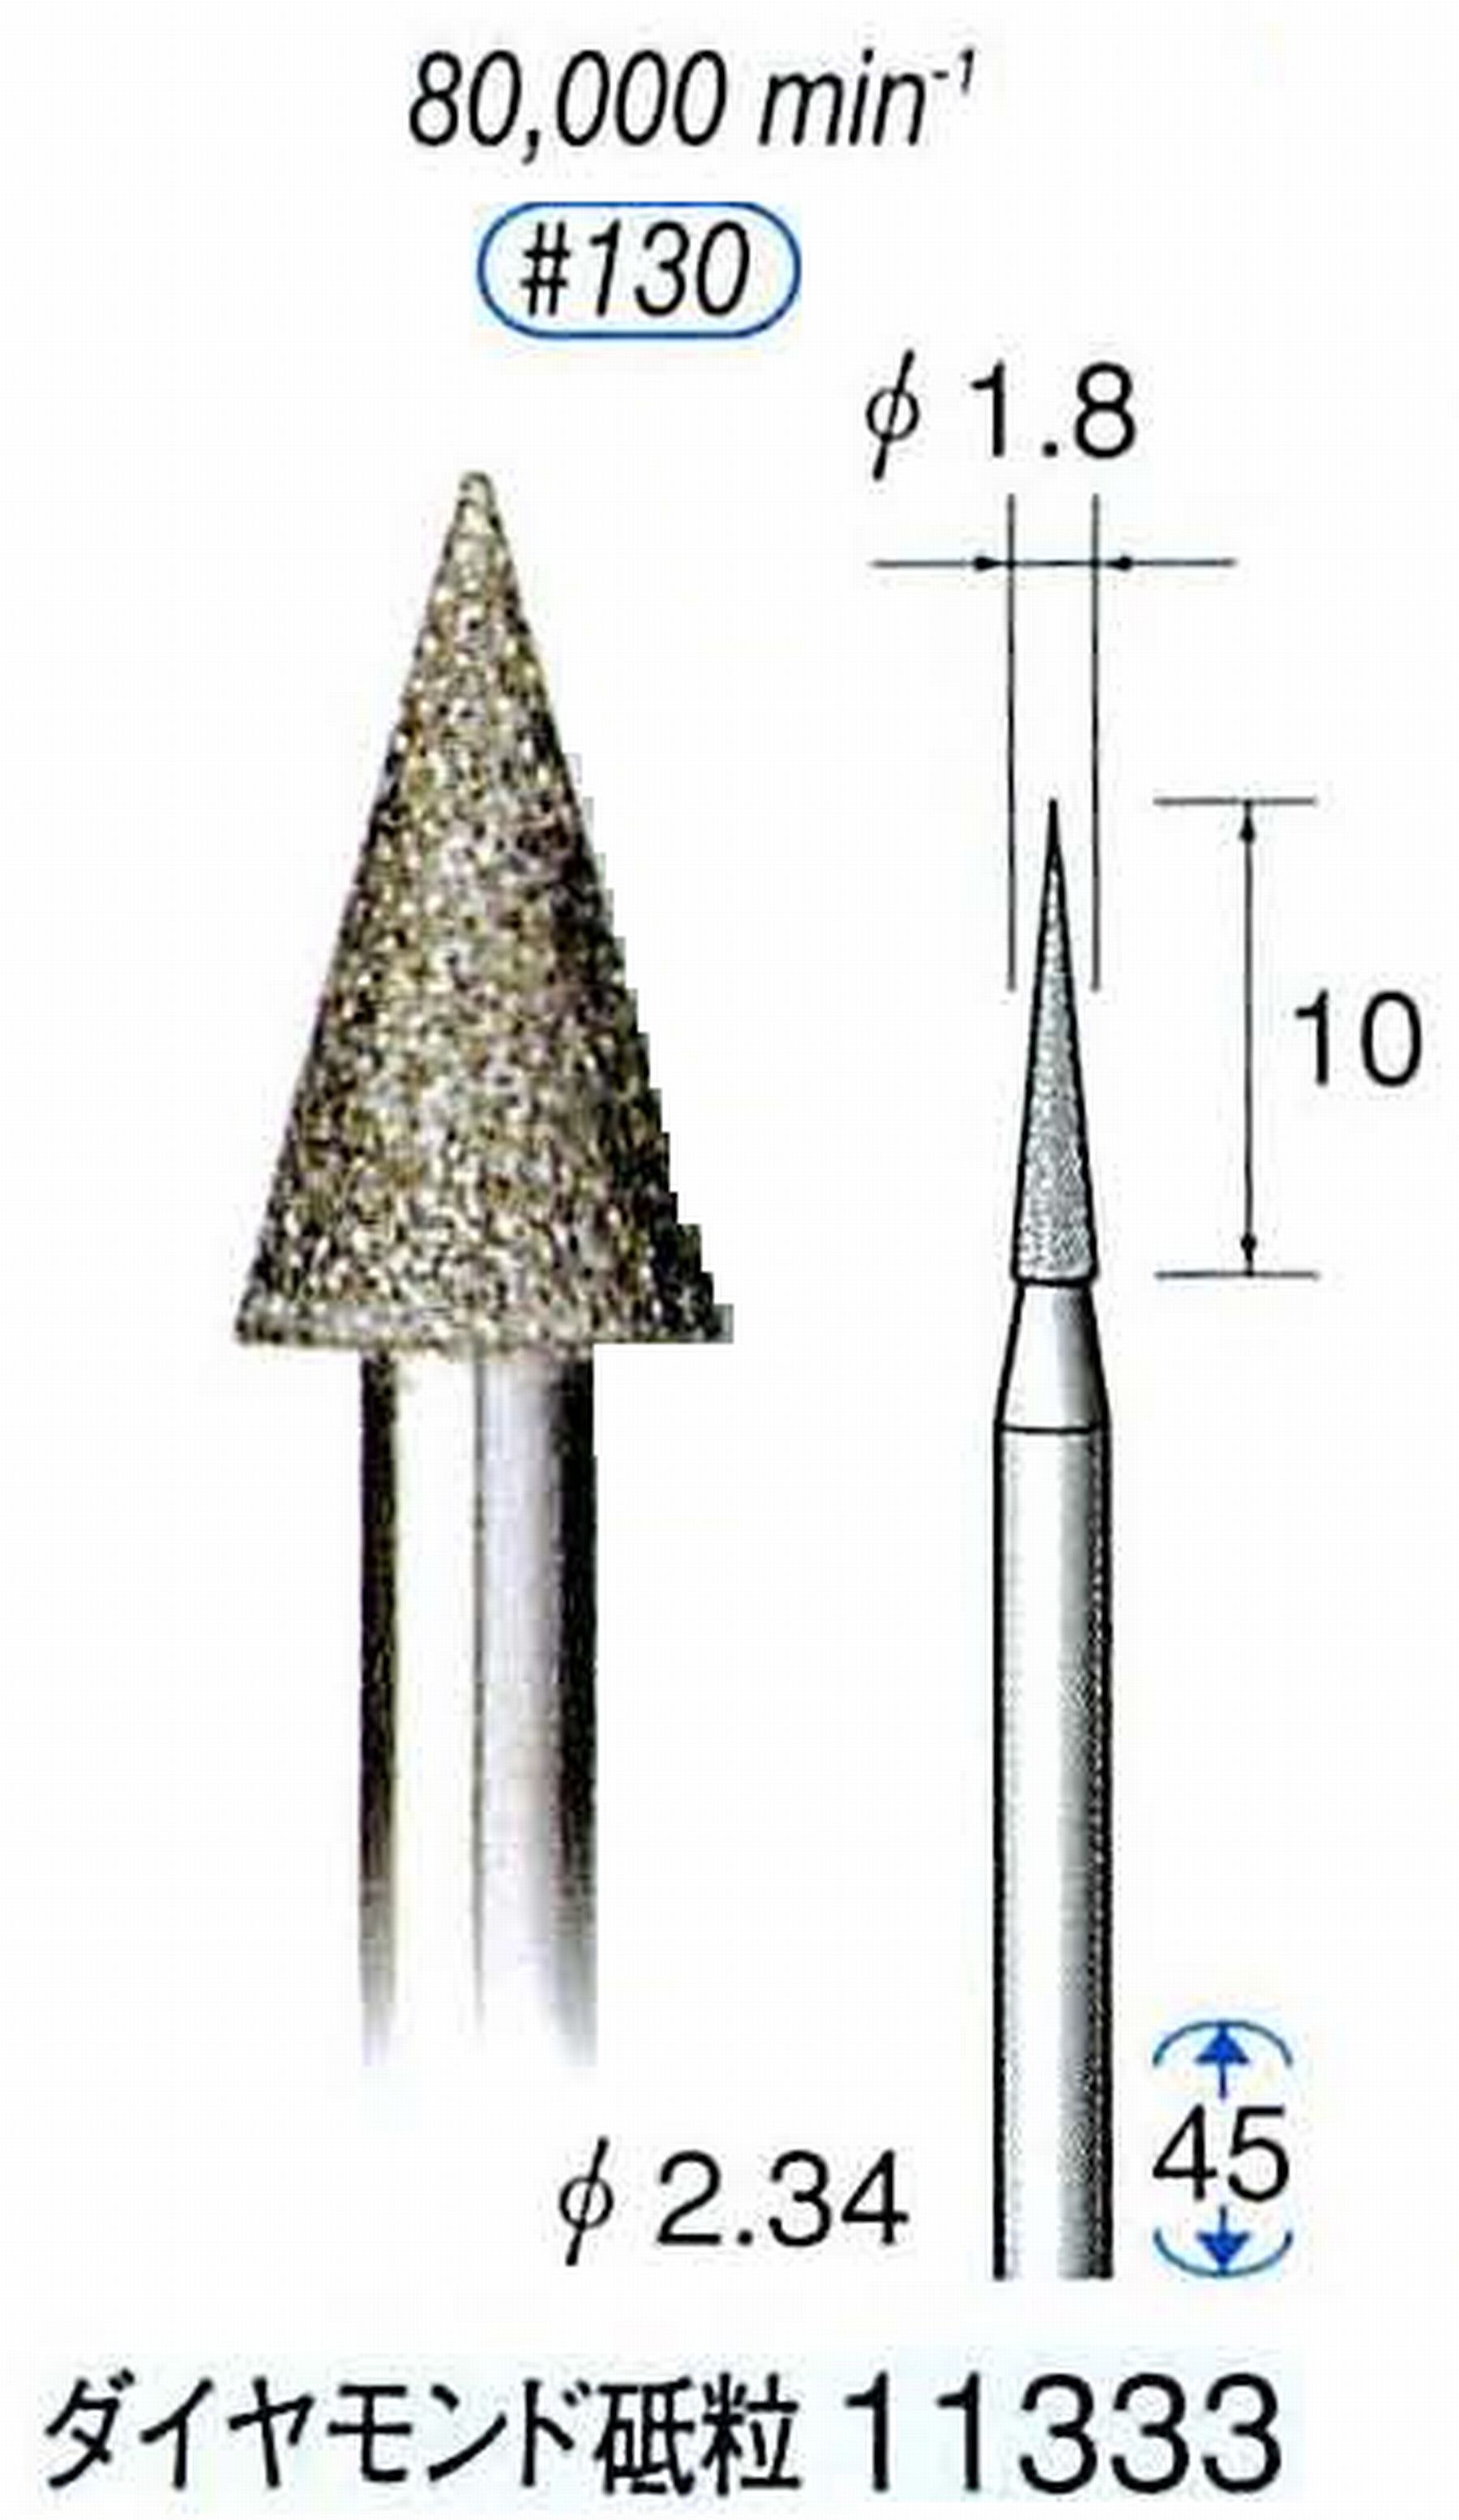 ナカニシ/NAKANISHI 電着ダイヤモンドバー ダイヤモンド砥粒 軸径(シャンク)φ2.34mm 11333